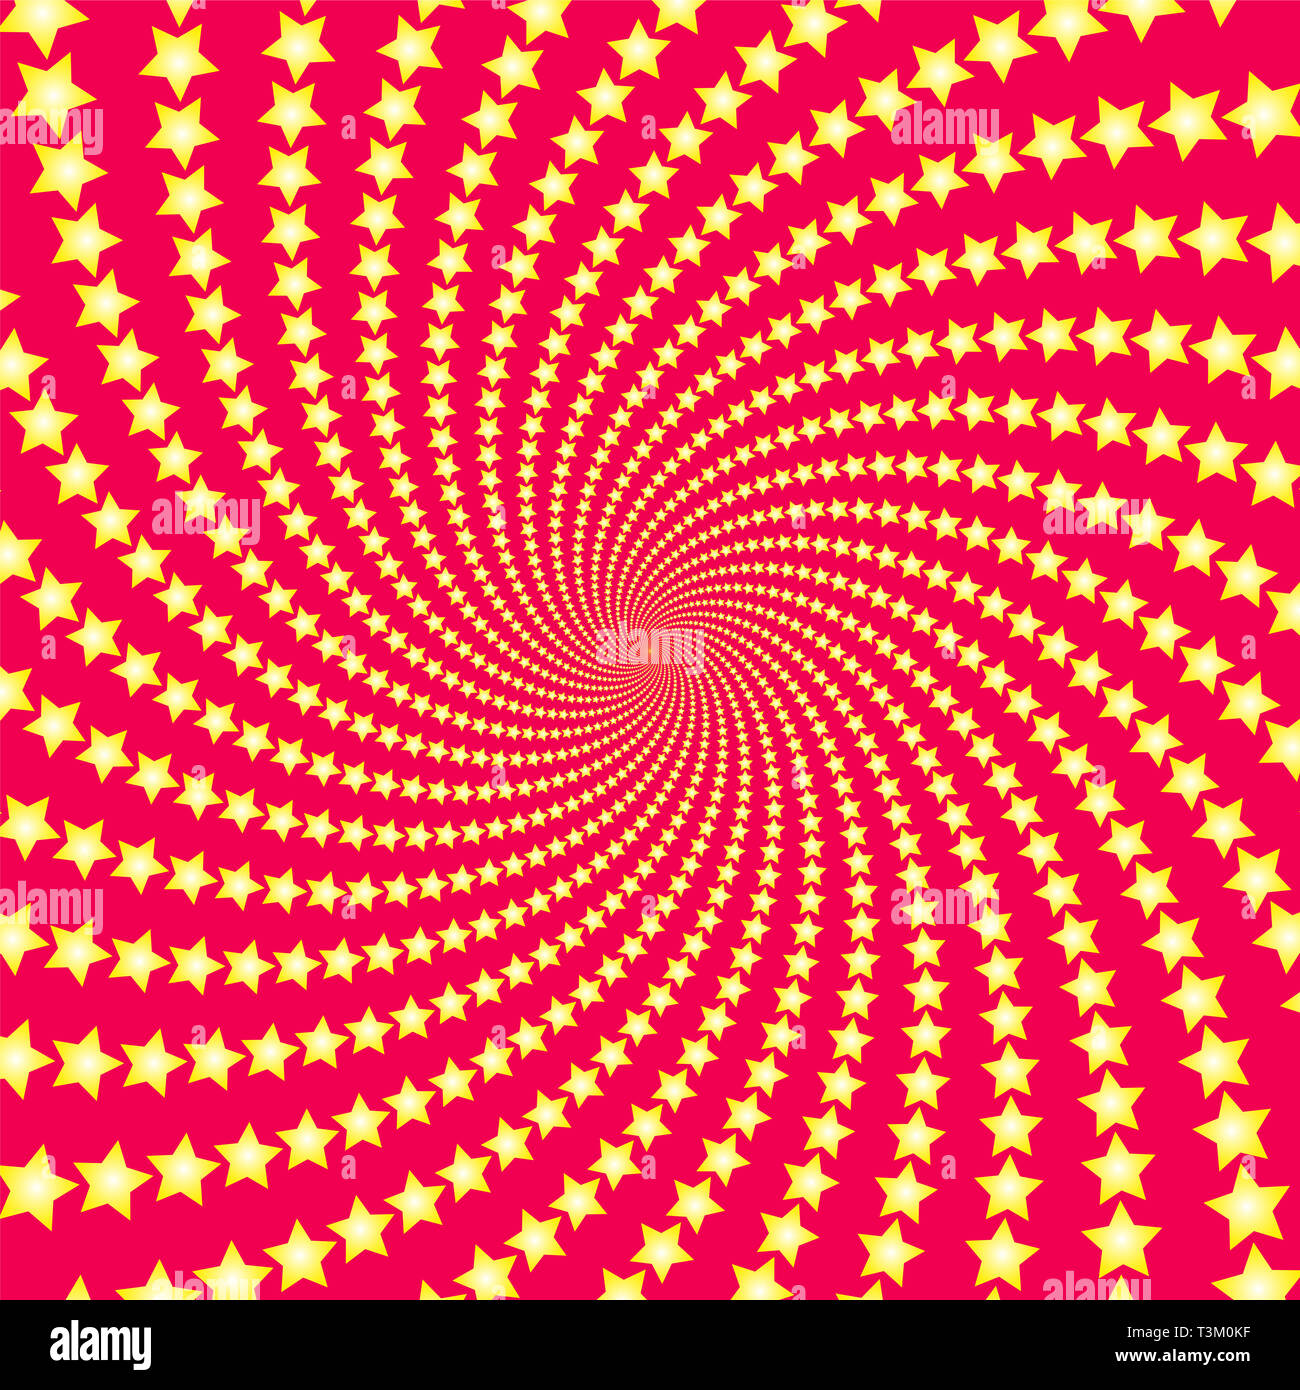 Spirale. Gelbe Shooting Stars auf rotem Hintergrund. Twisted Rundschreiben fractal Abbildung, kraftvoll, dynamisch, hypnotisierenden Design. Stockfoto